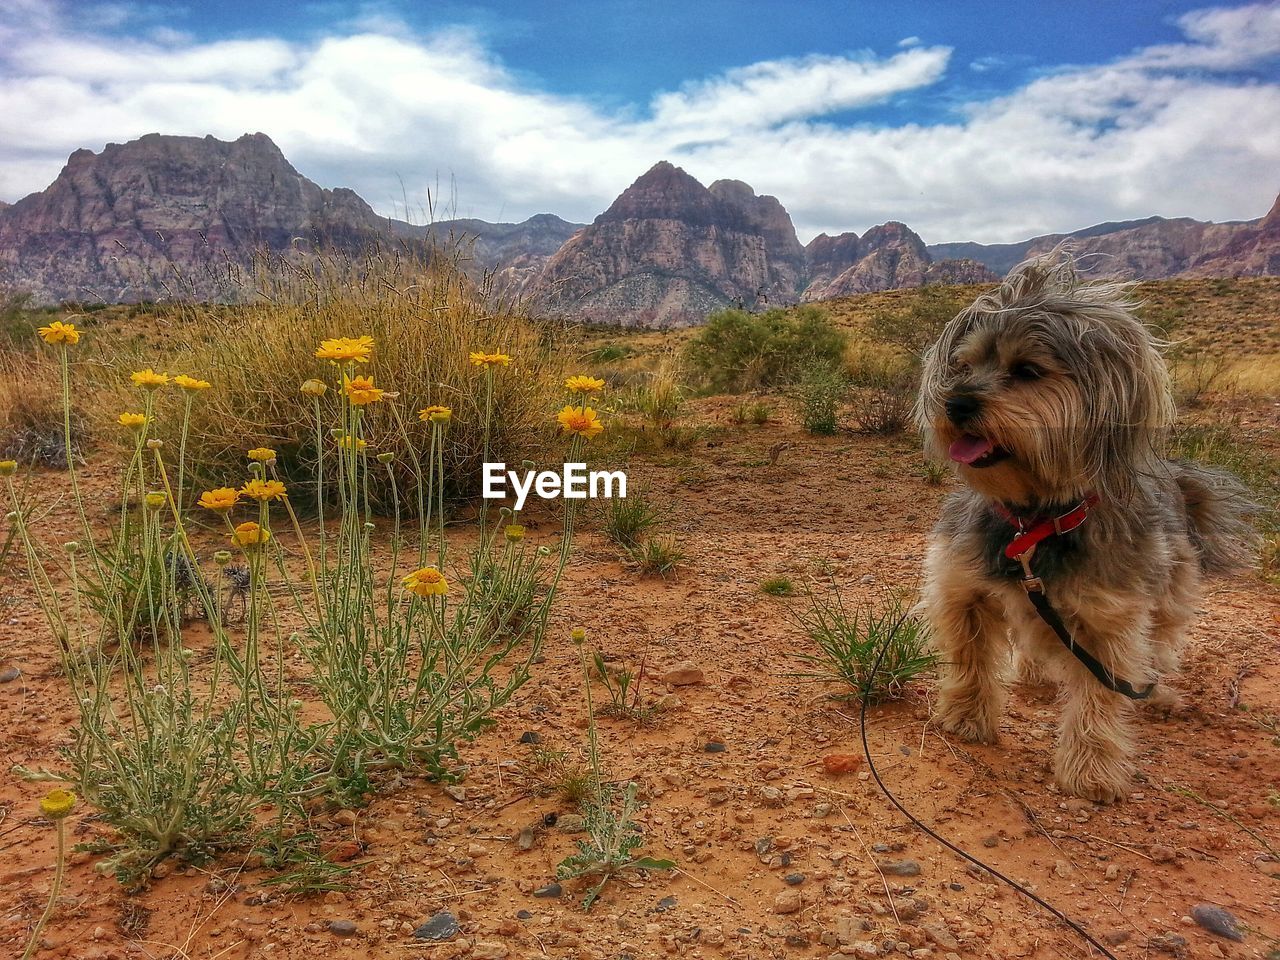 Cute dog in desert landscape